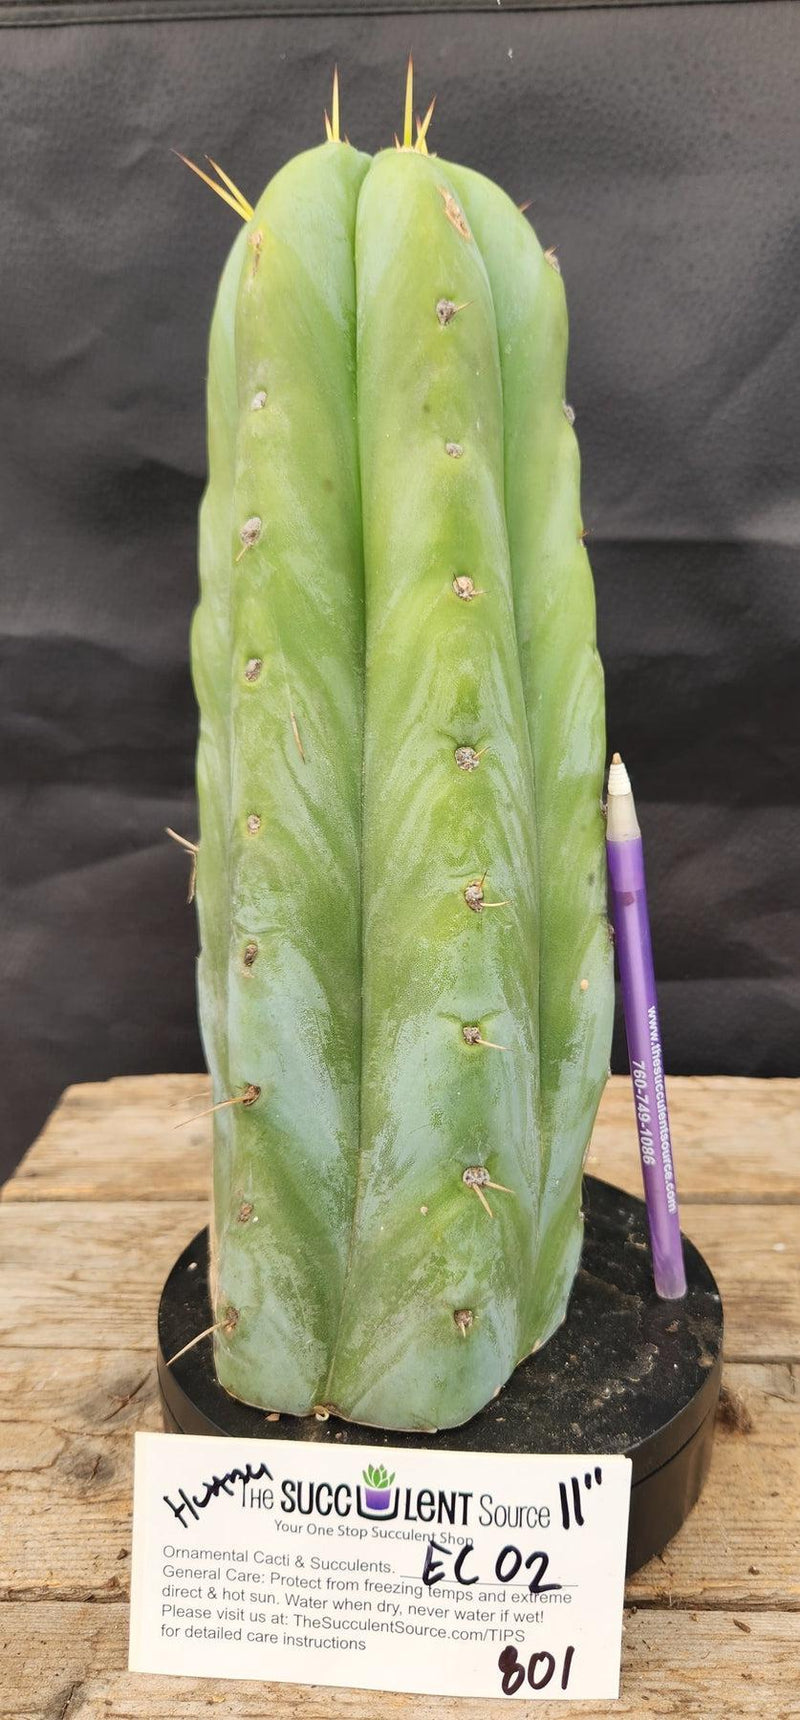 #EC02 EXACT Trichocereus Huanucoensis Jiimz Big Mac P7 Cactus CUTTING 11"